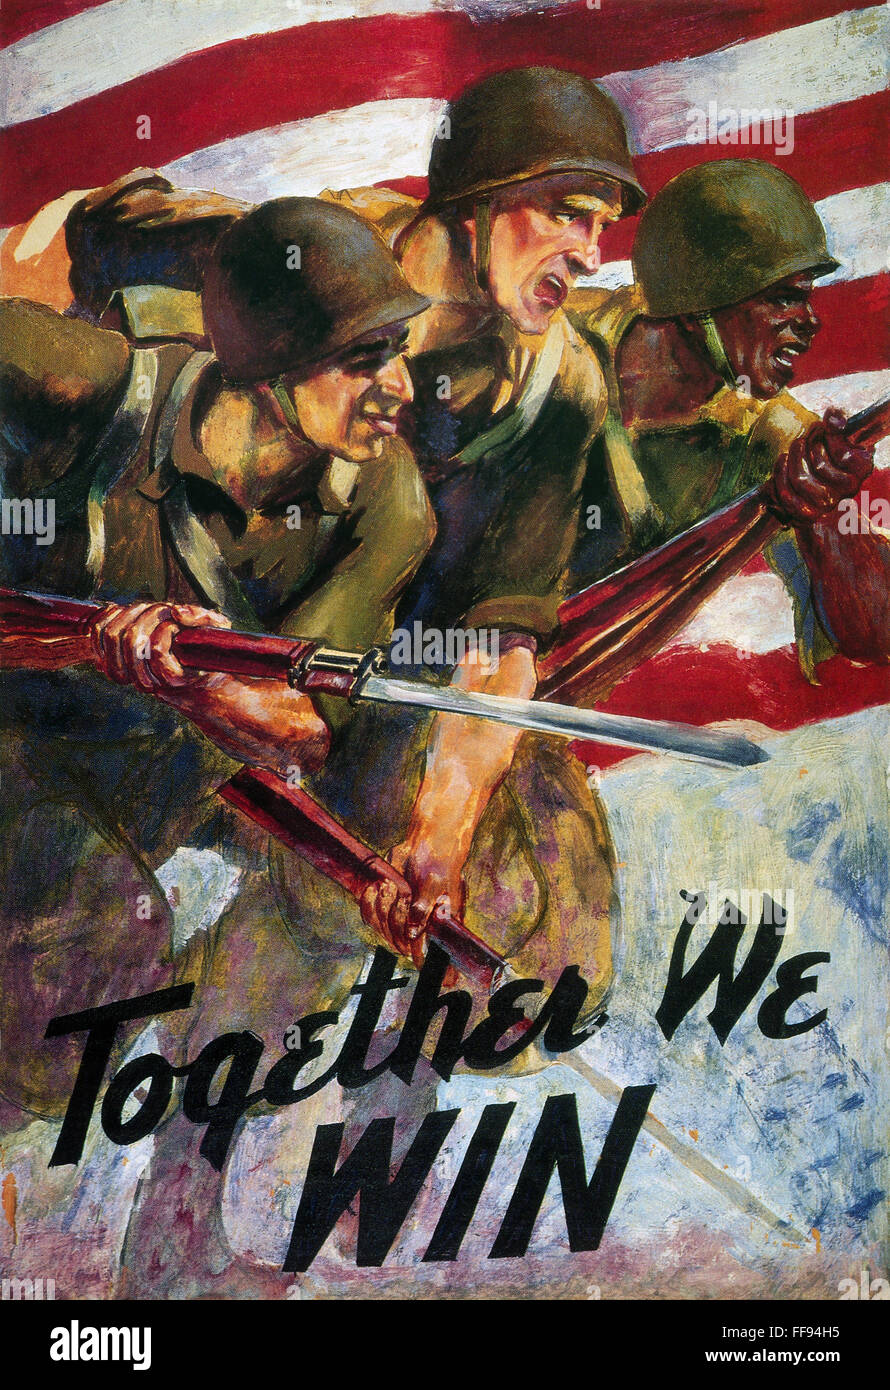 WWII: BIRACIAL EINHEIT POSTER. /n'Together, die wir gewinnen ": amerikanische Weltkrieg Plakat mit schwarzen und weißen Soldaten Seite an Seite kämpfen. Stockfoto